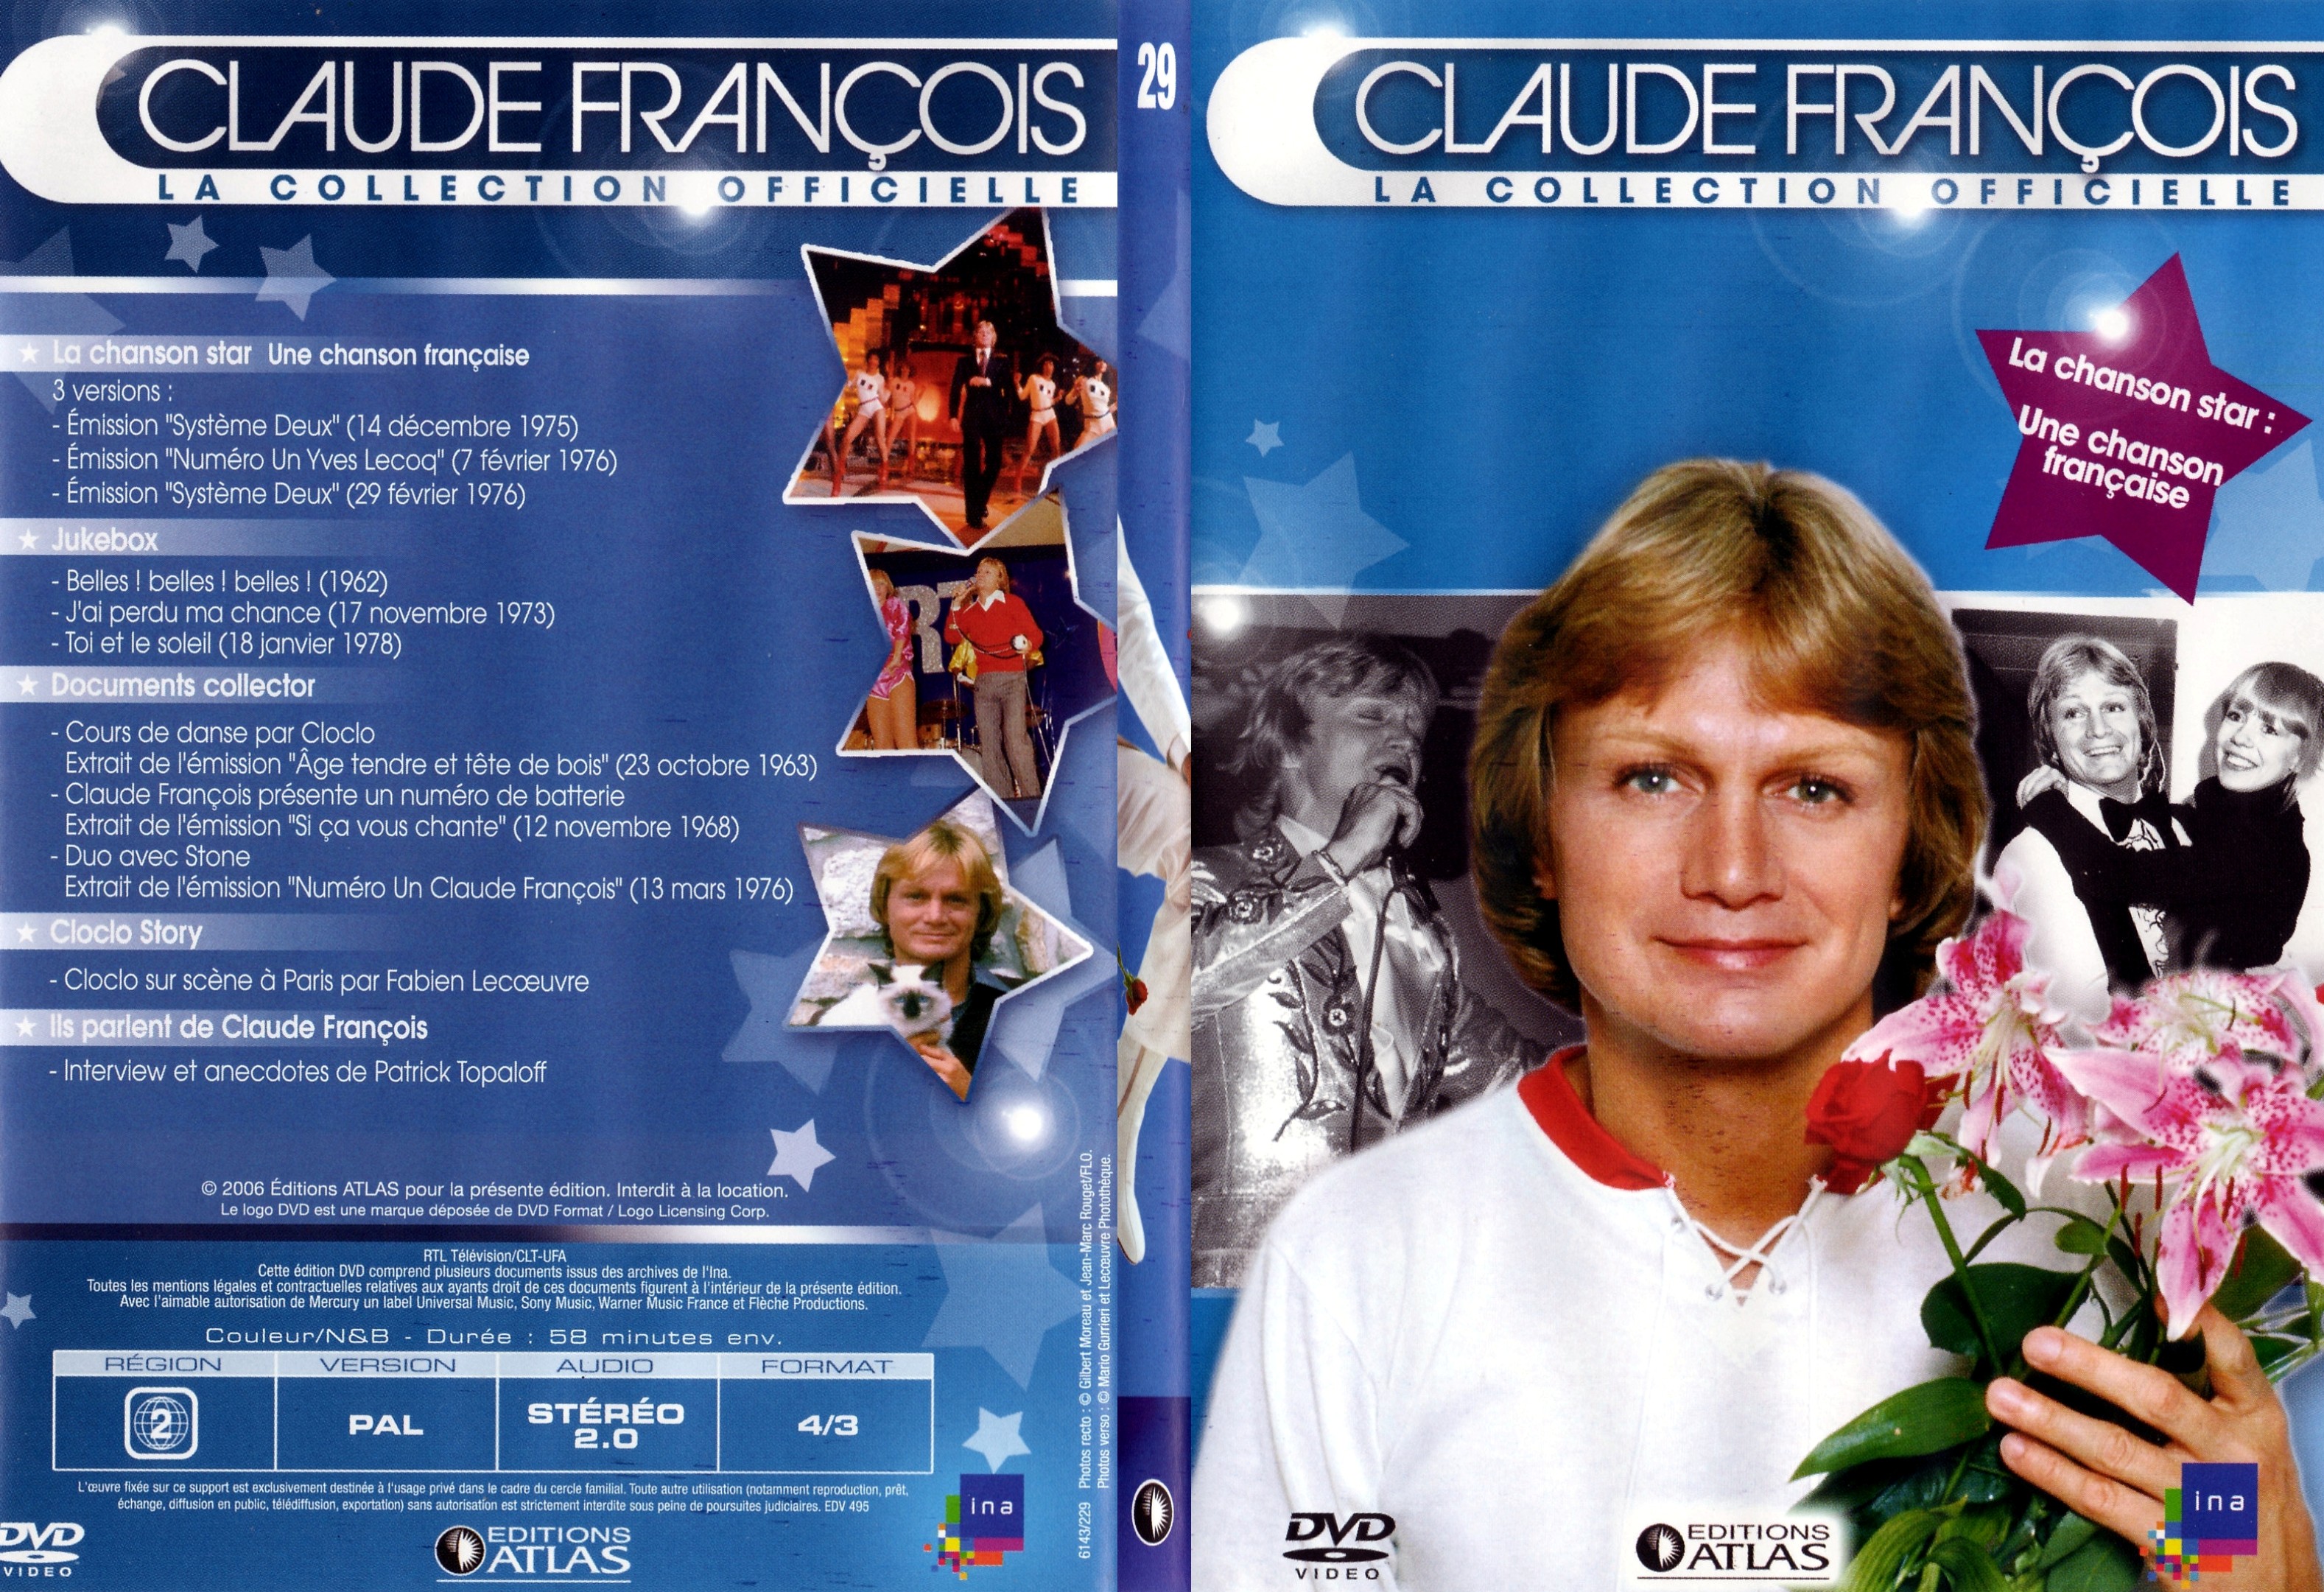 Jaquette DVD Claude francois le collection officielle vol 29 - SLIM